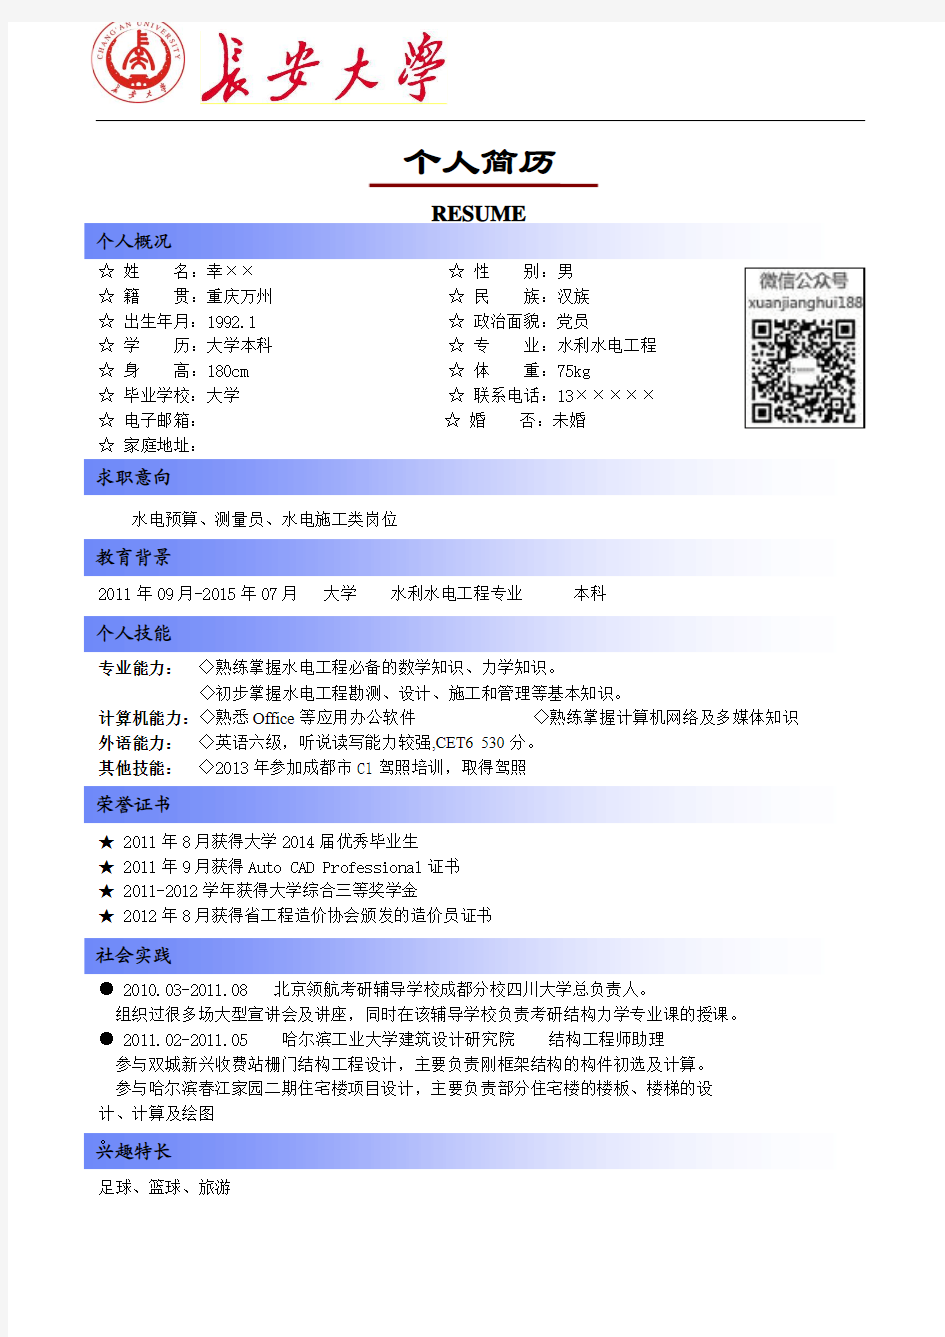 长安大学简历模板(版式1+蓝色标题+logo)